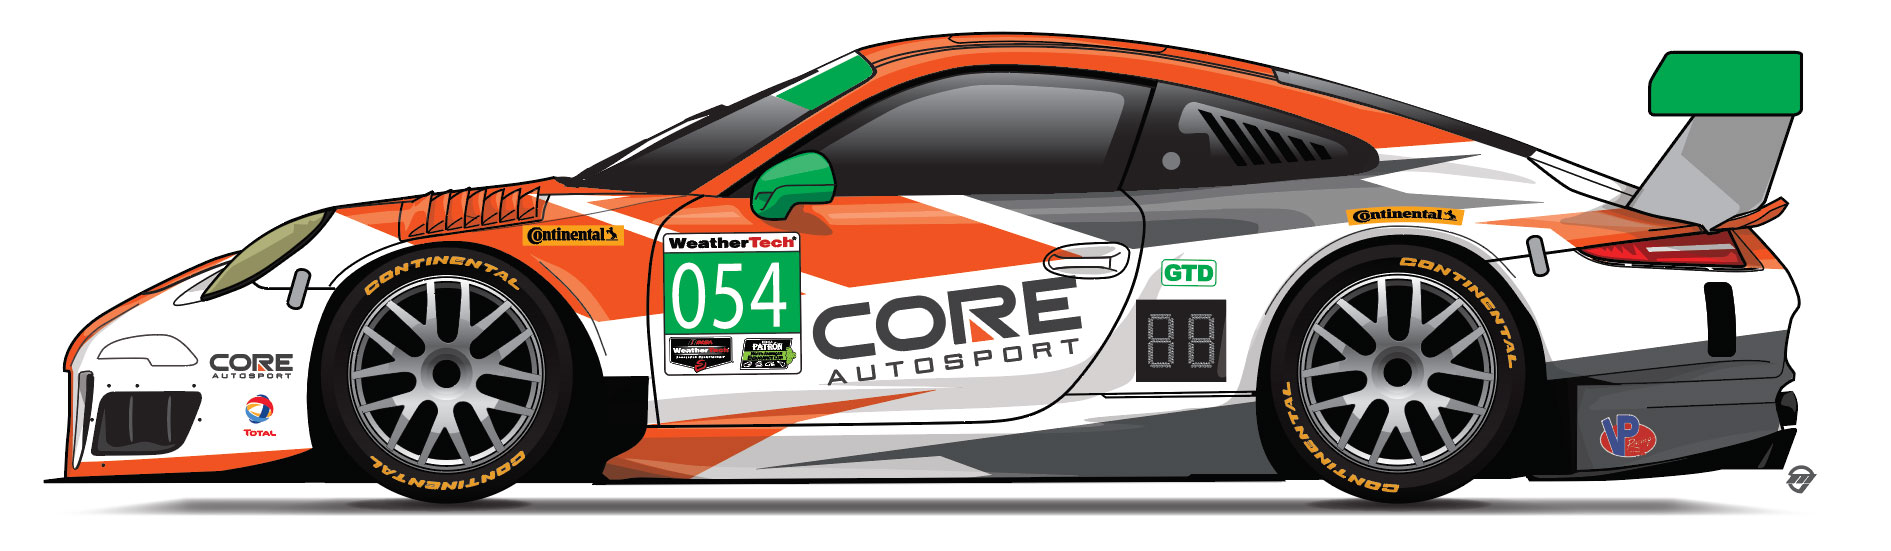 Core GT Daytona